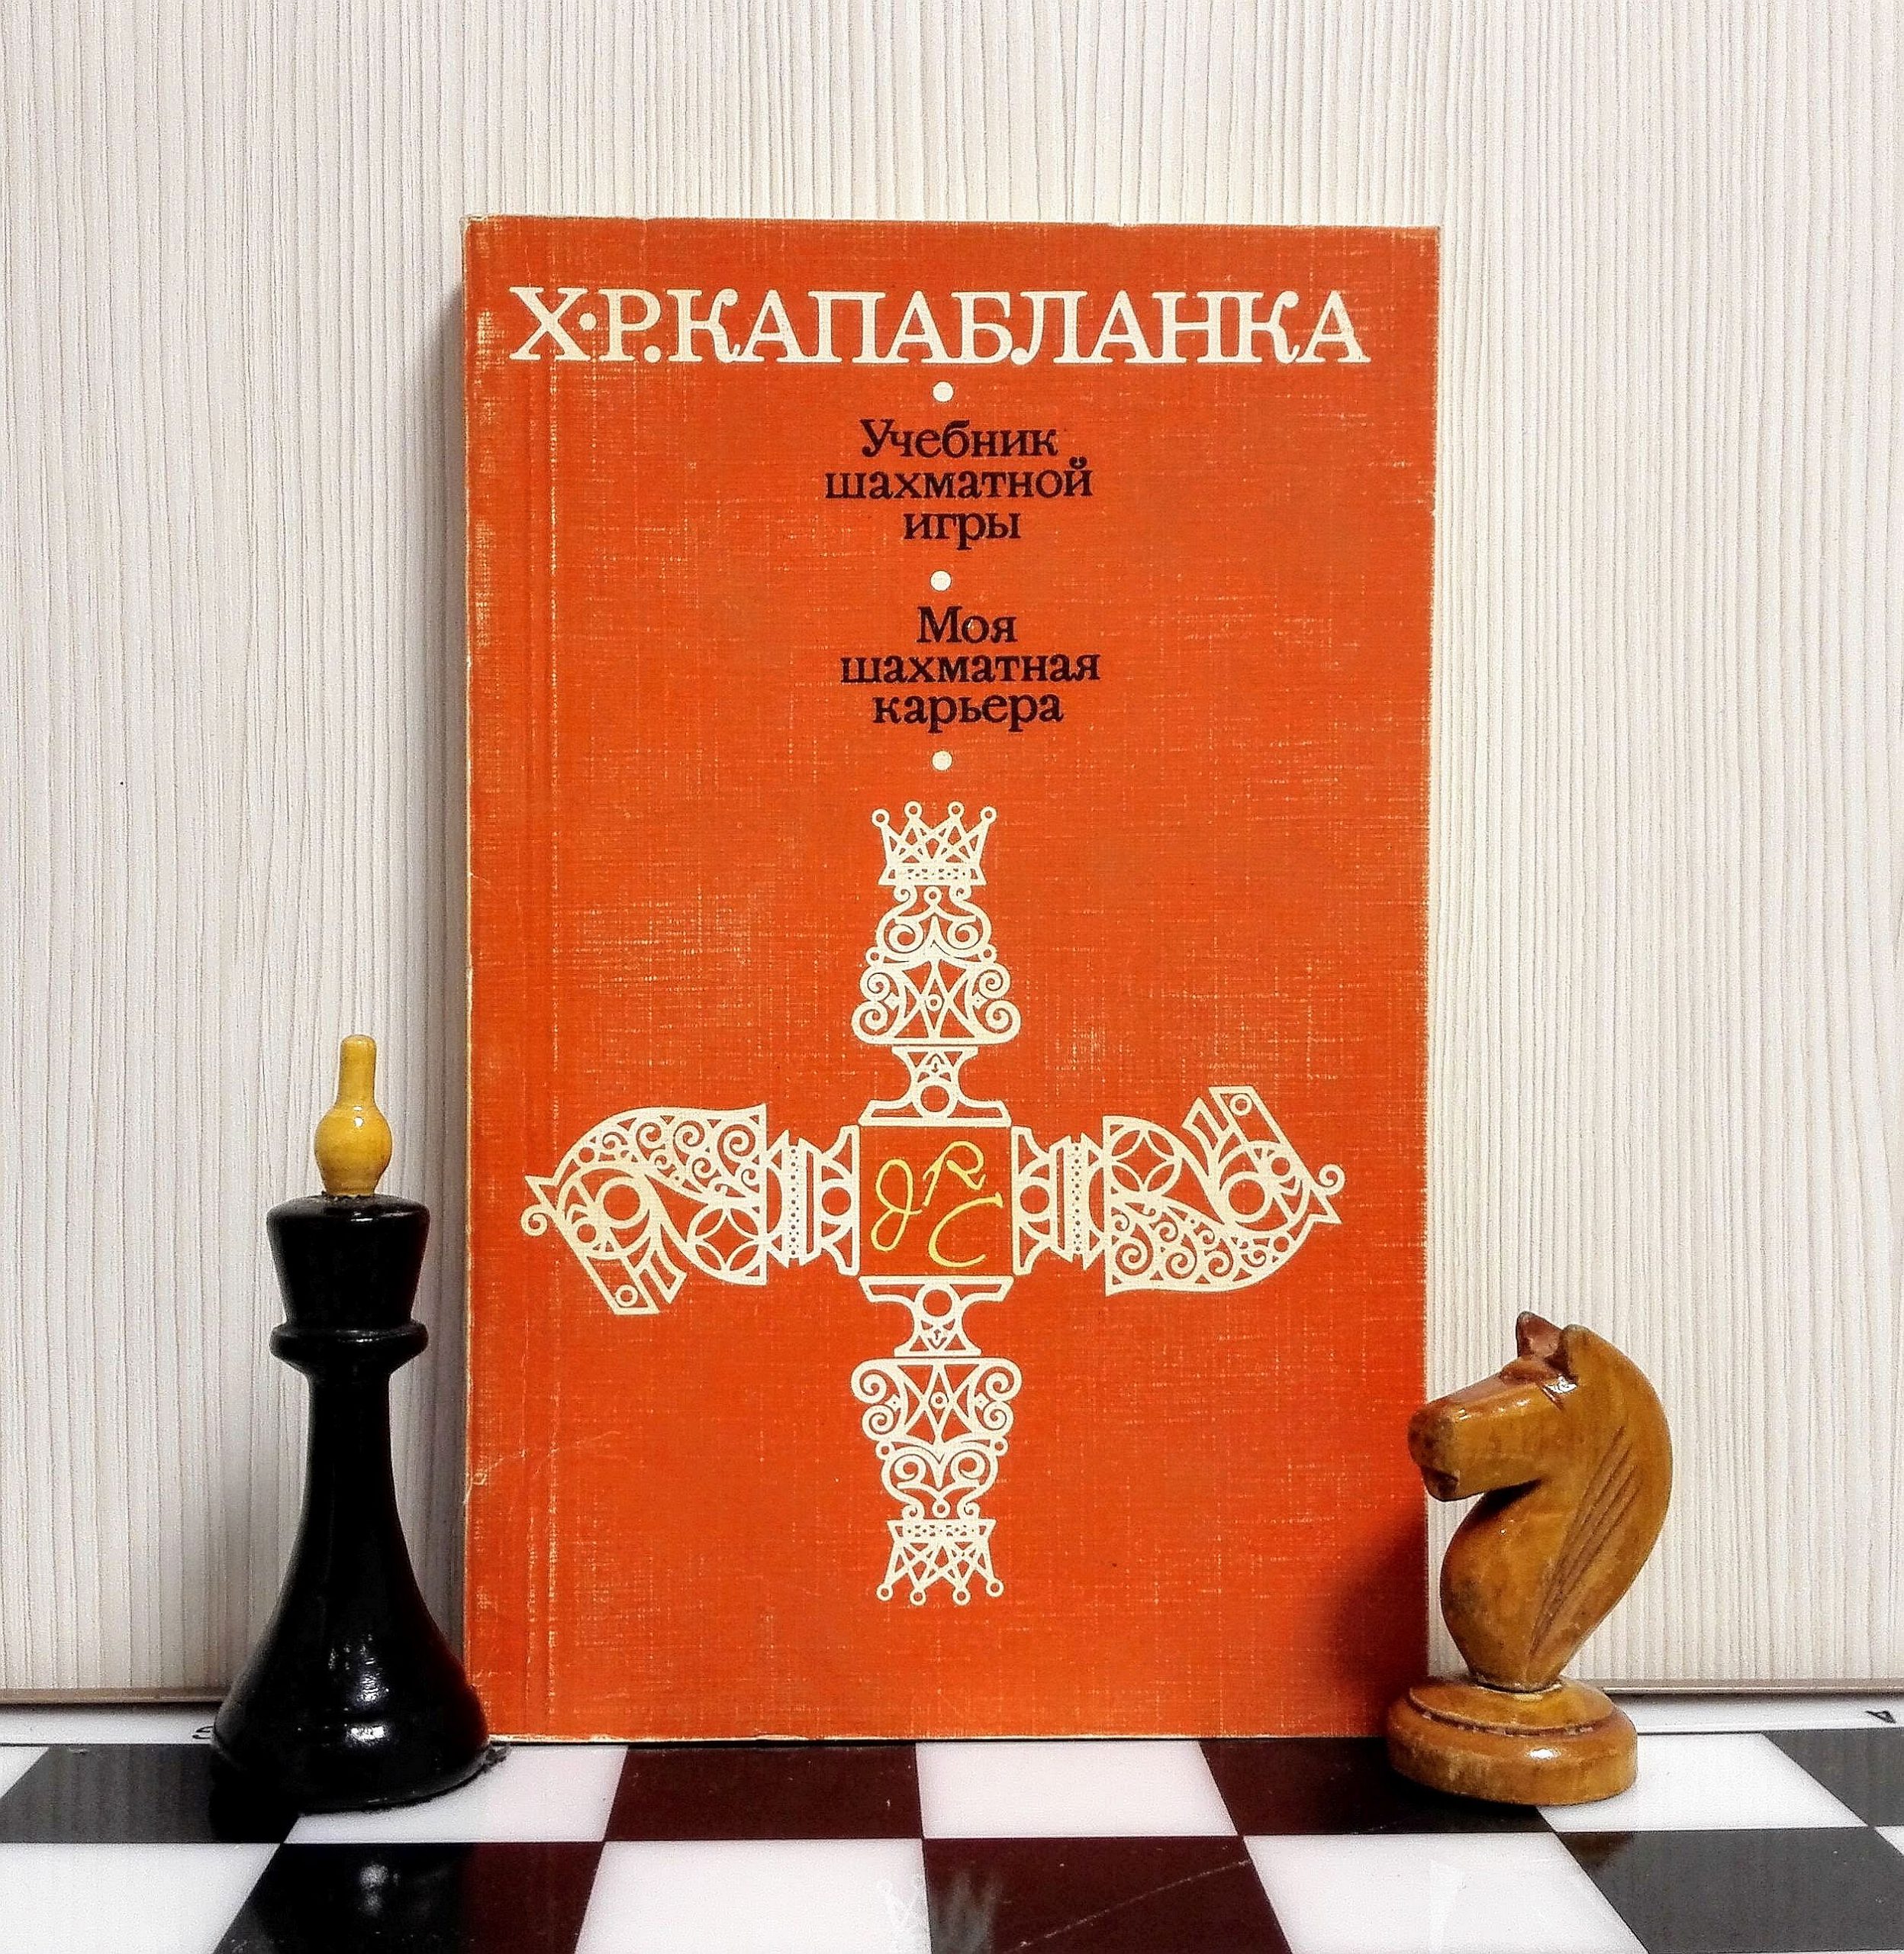 CAPABLANCA in RUSSIA 1988 CHESS BOOK in RUSSIAN, A.SIZONENKO